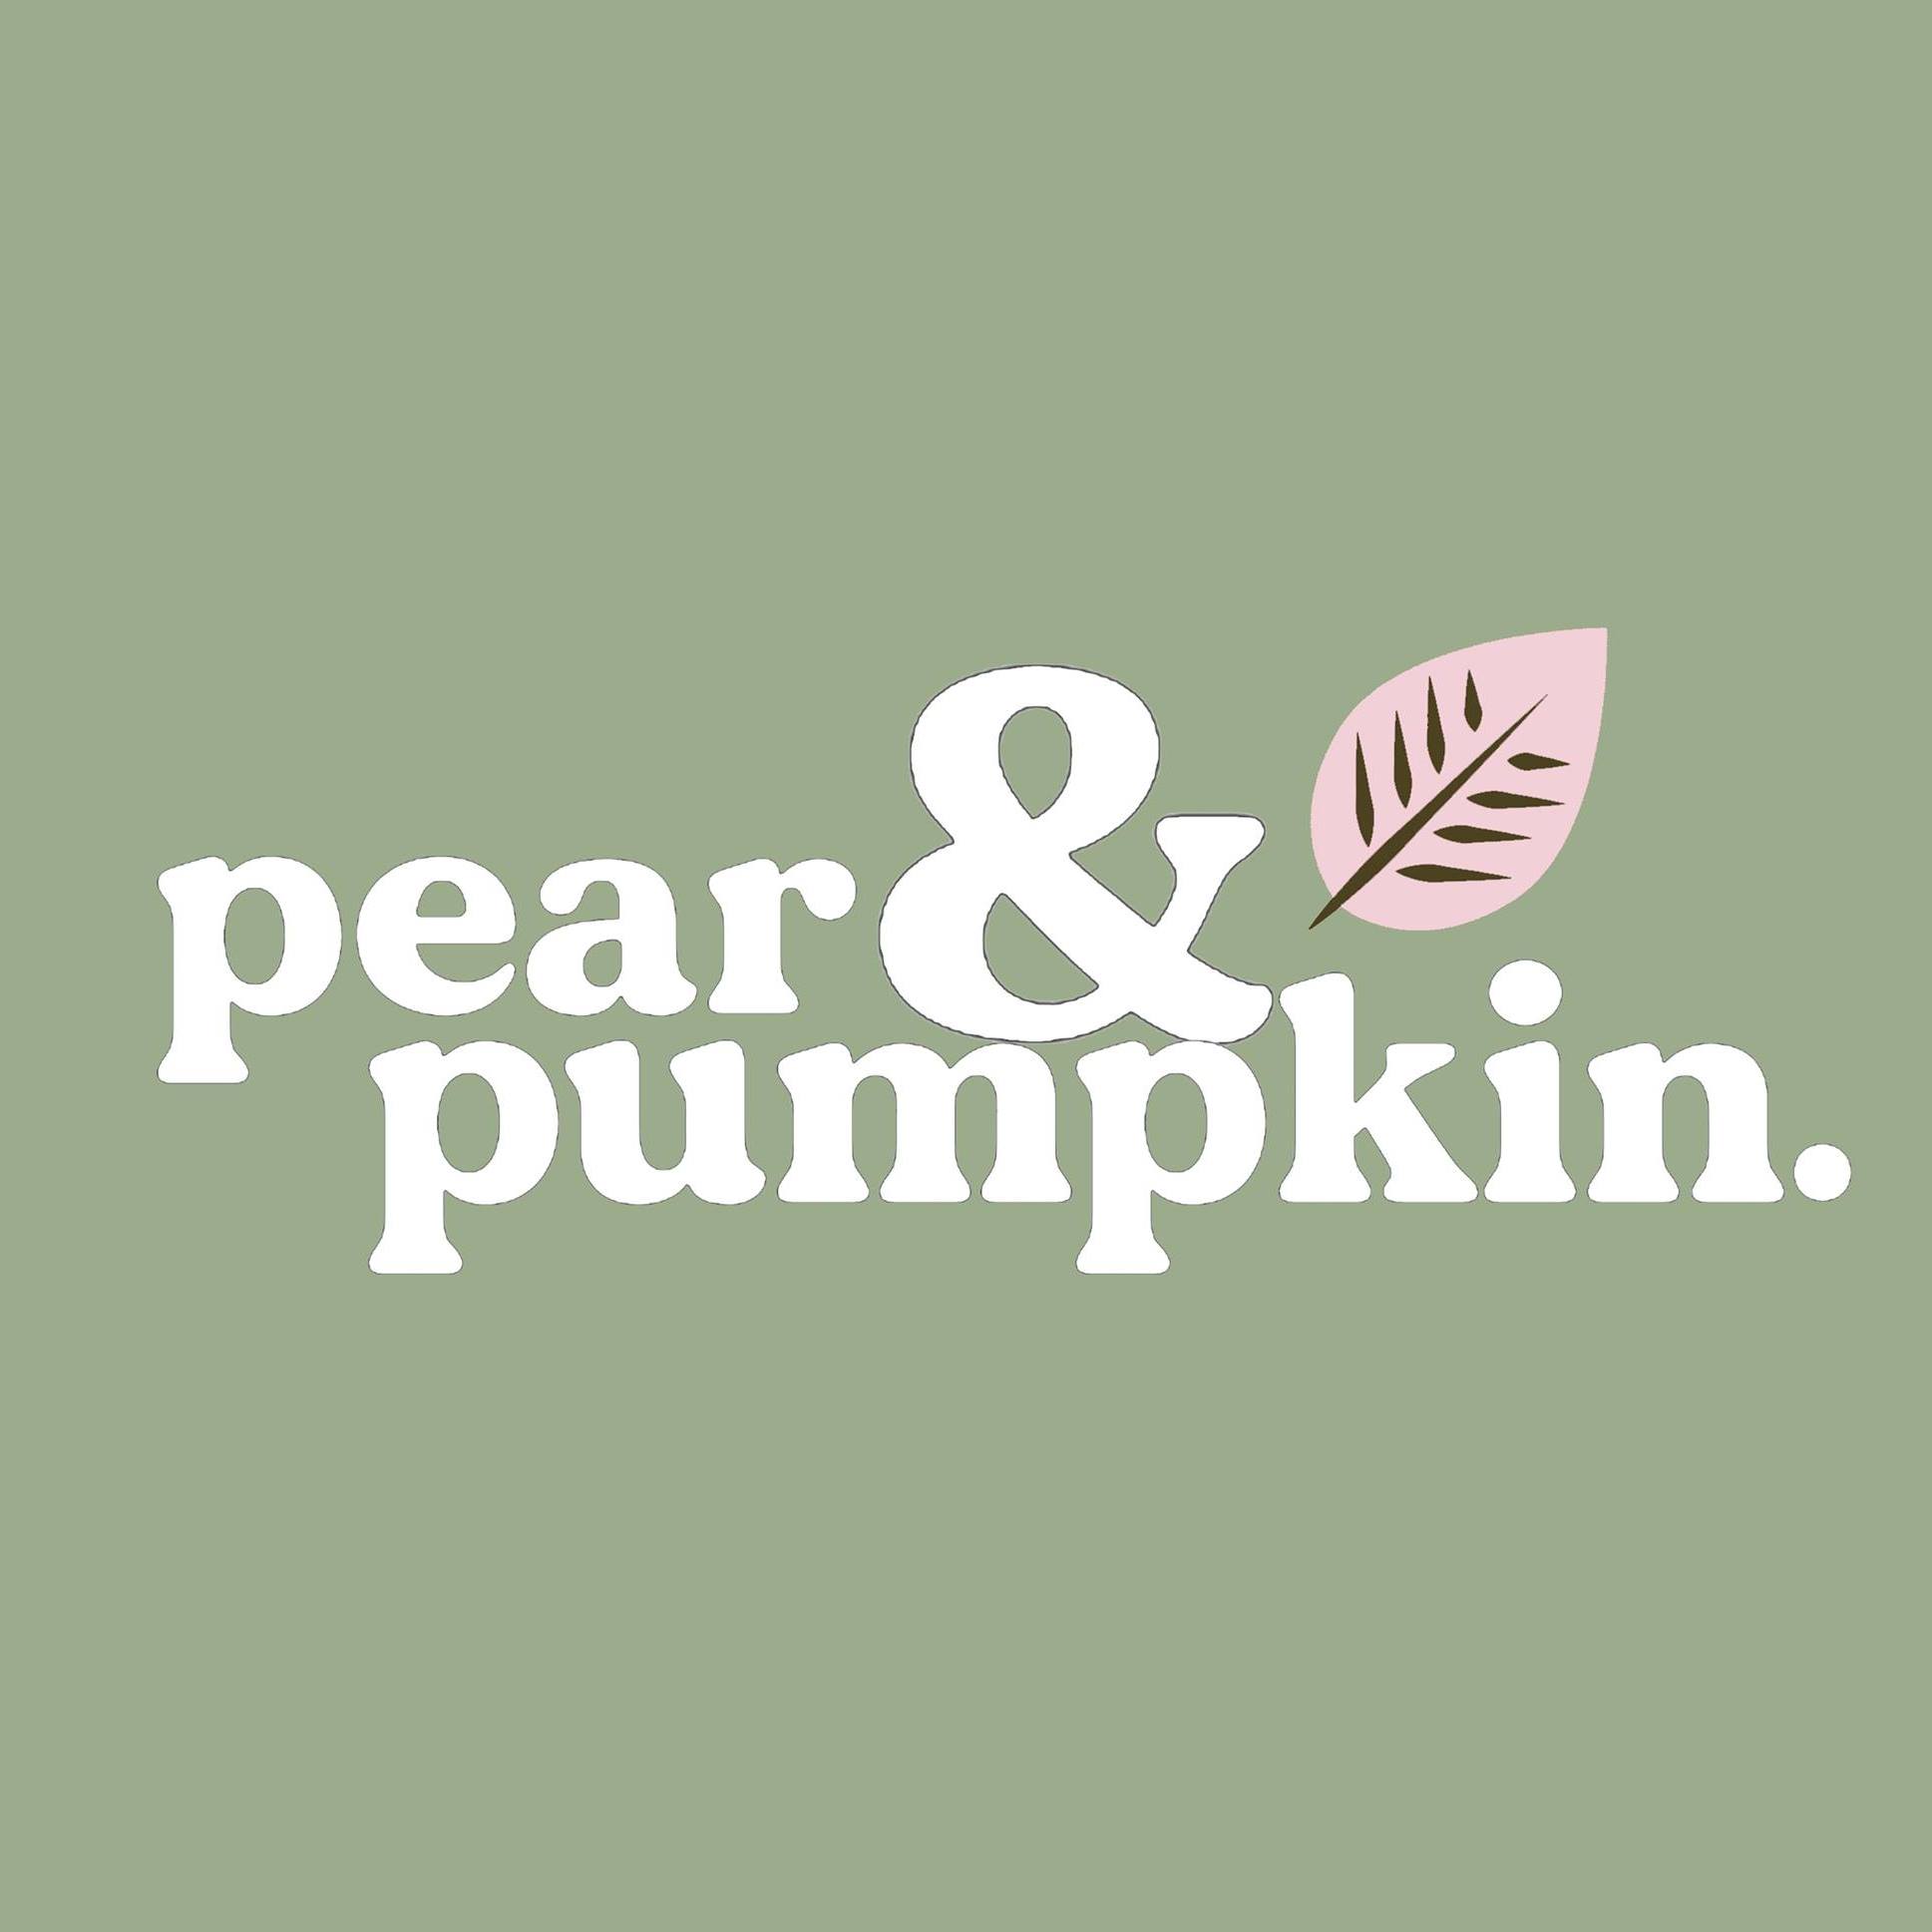 Pear & Pumpkin brand logo